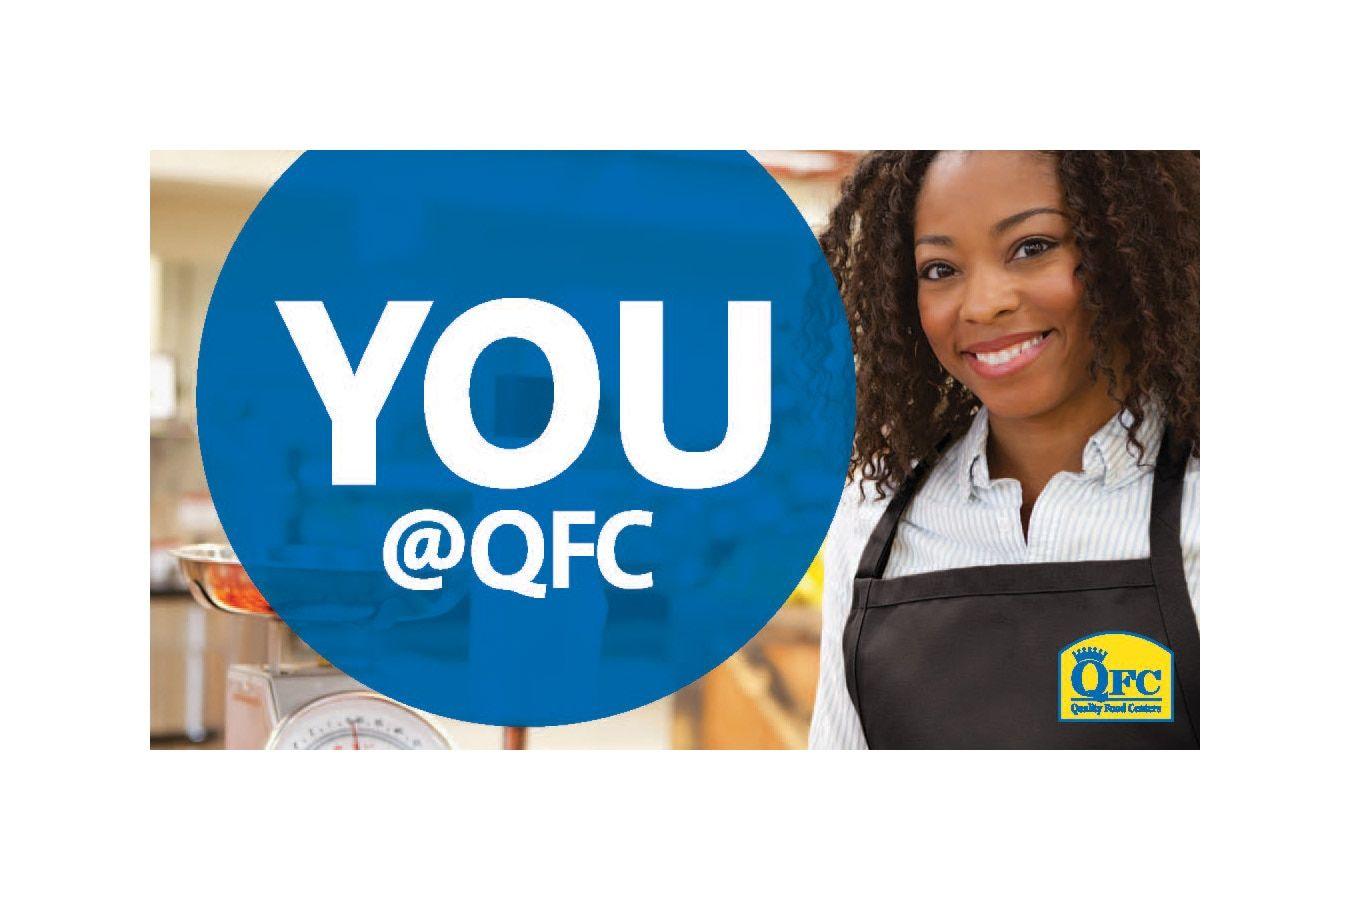 QFC Logo - QFC